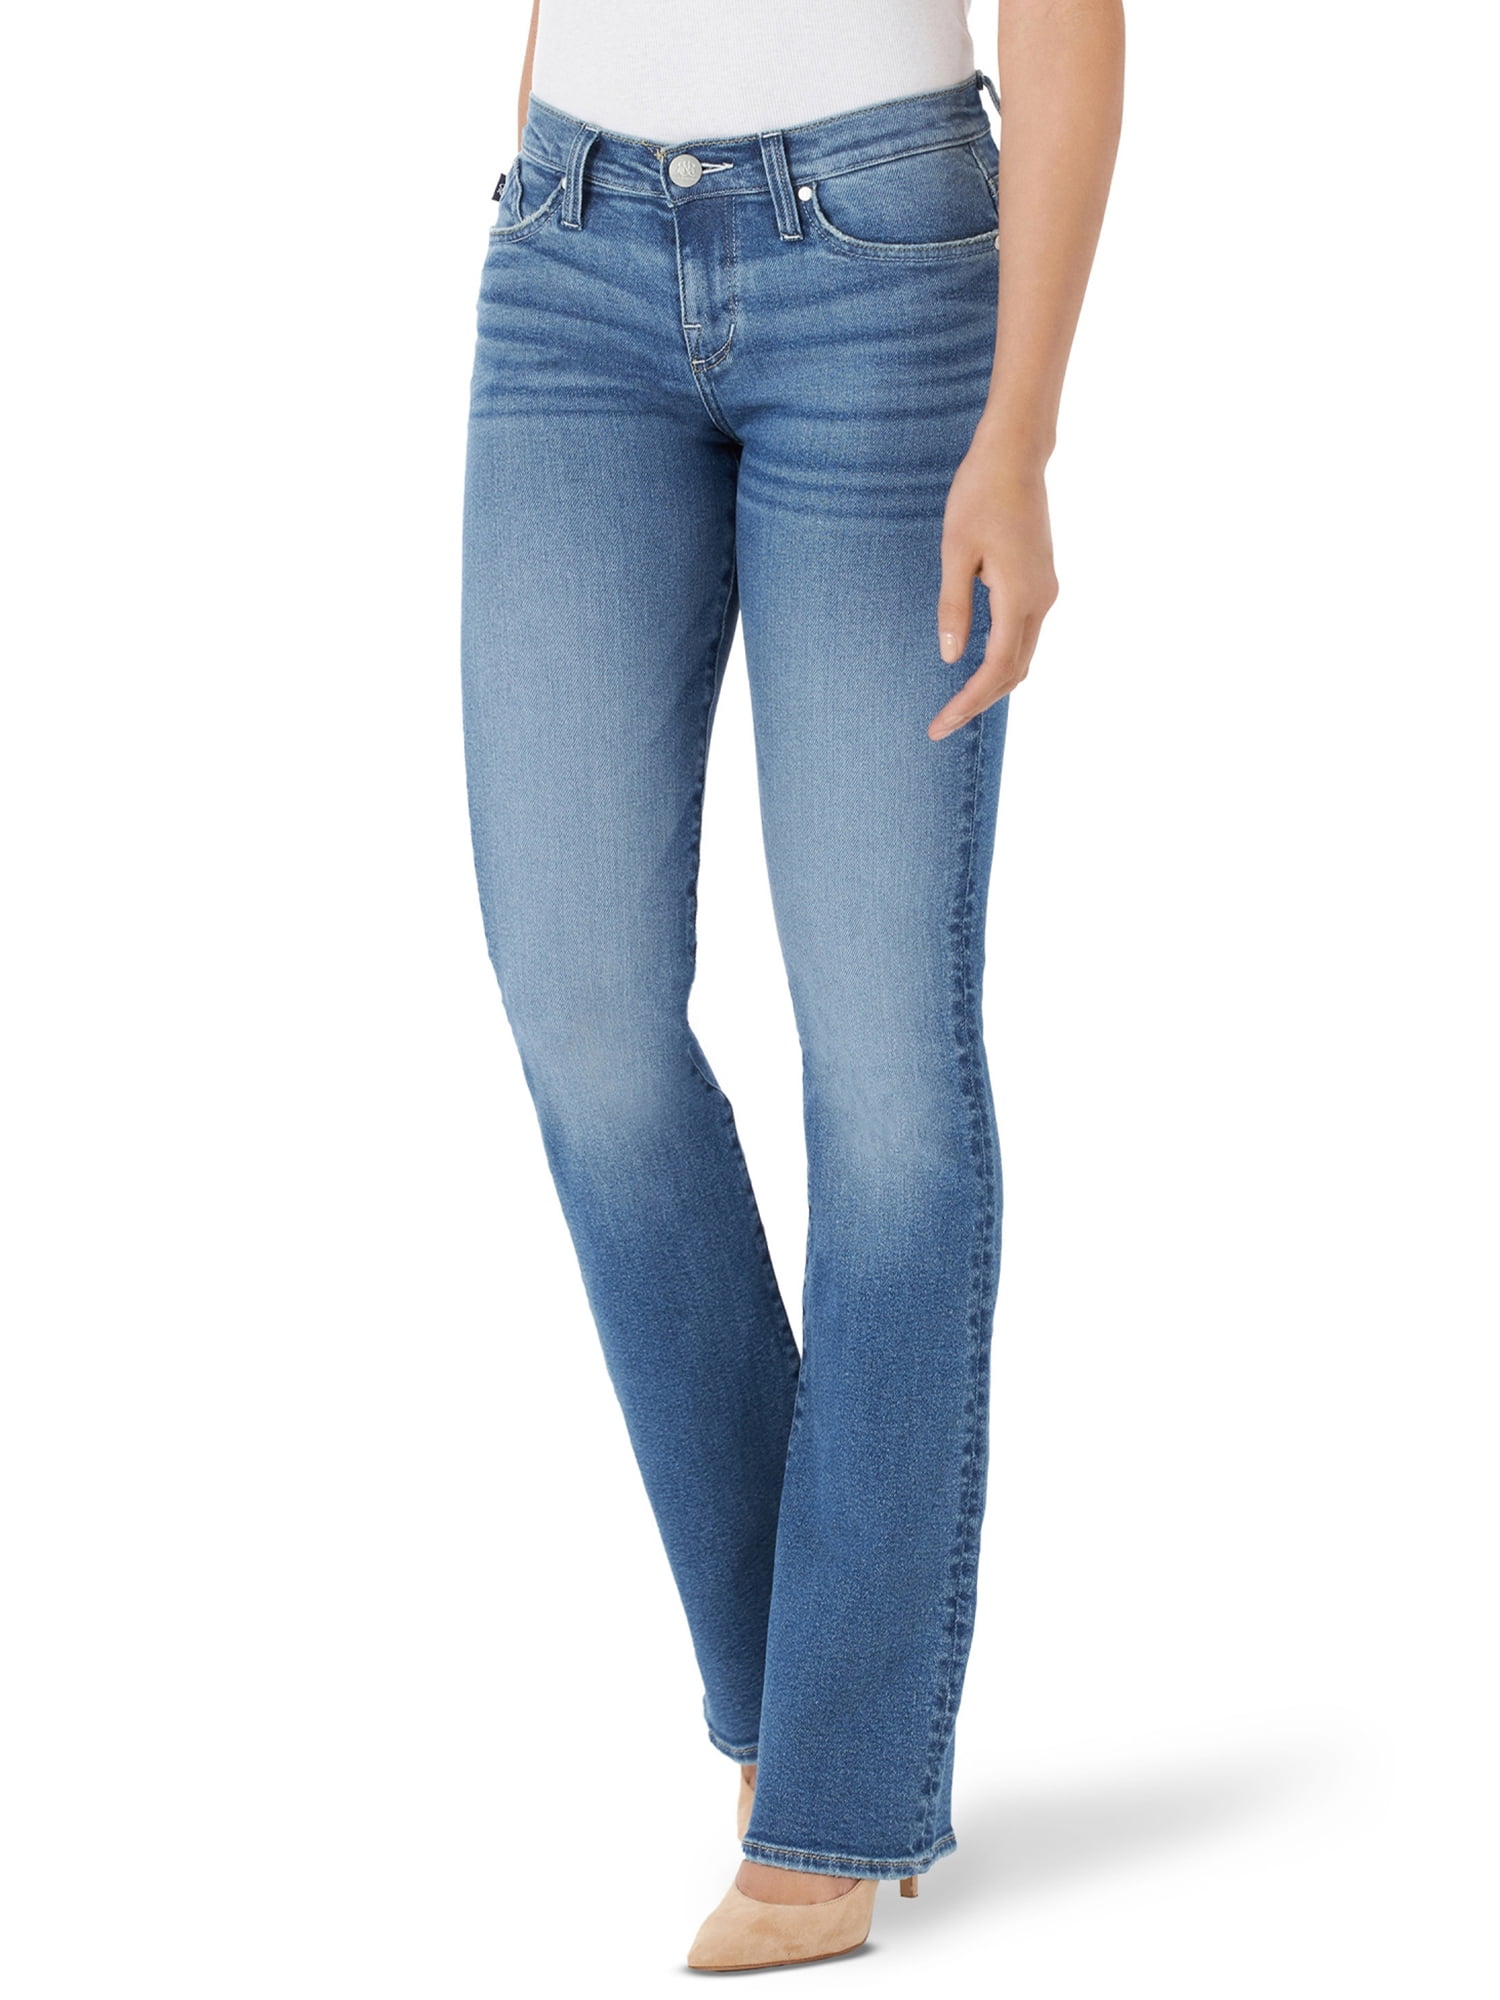 Women's Fleece Lined Bootcut Jeans 